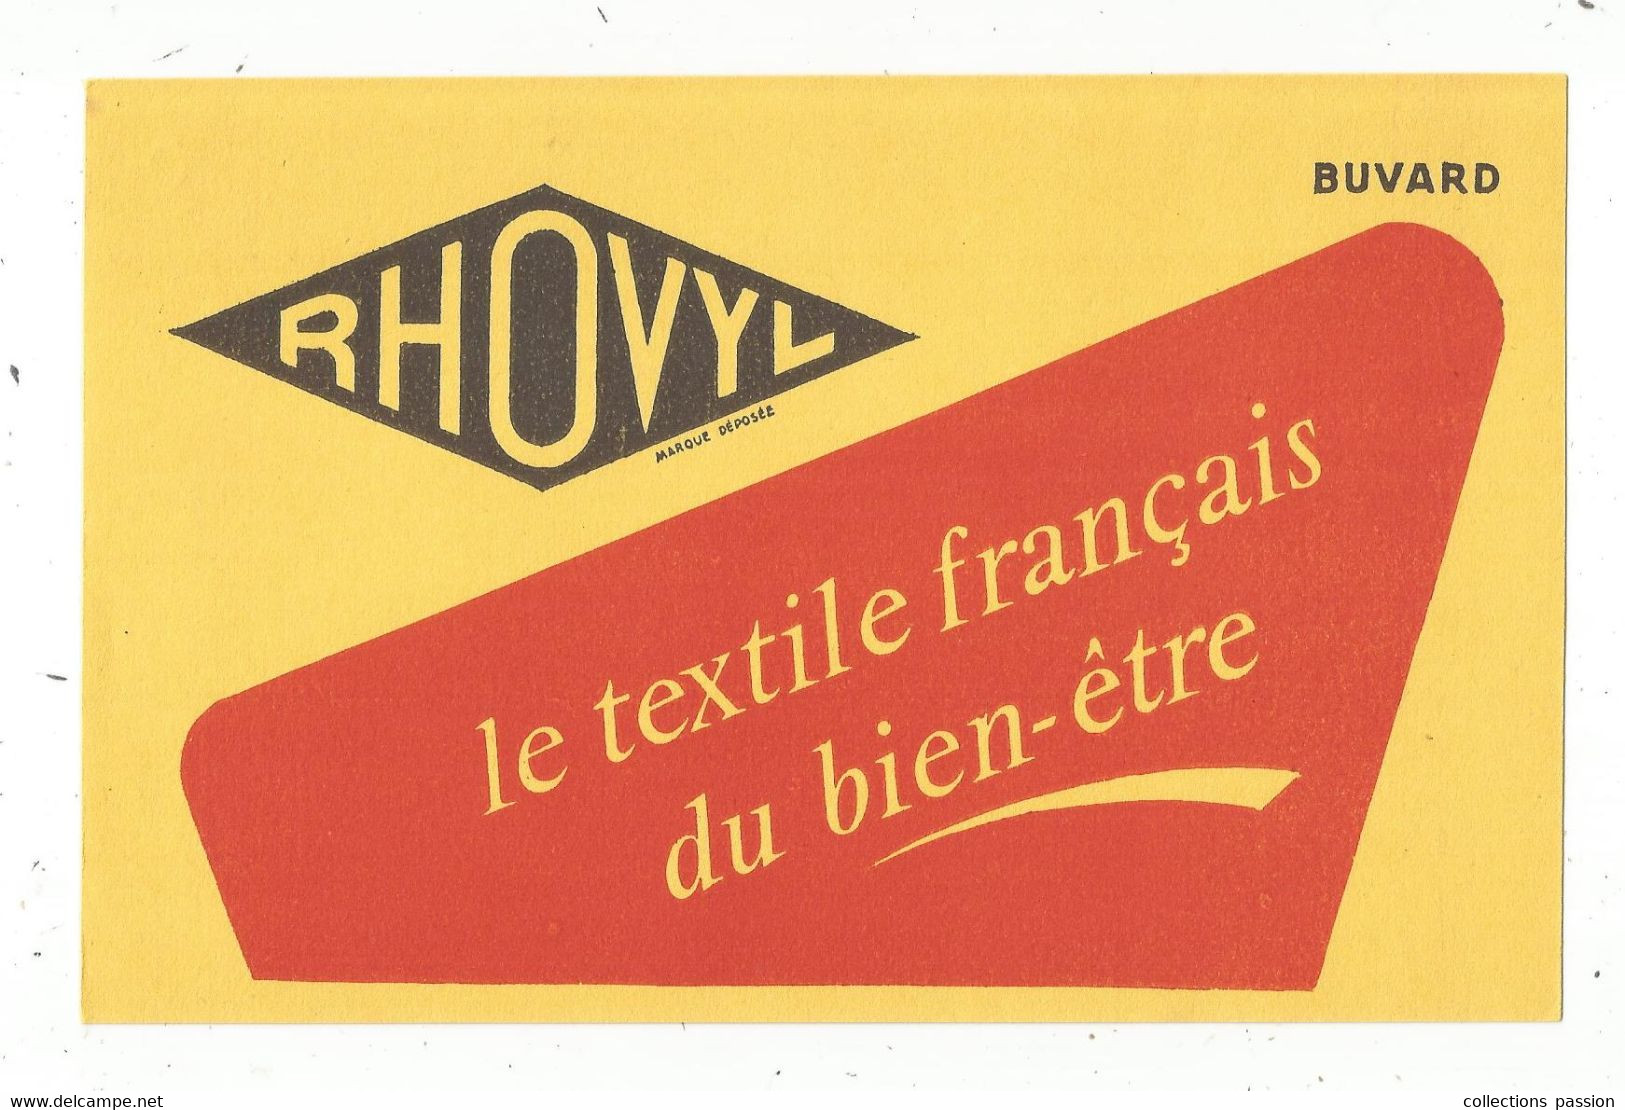 Buvard , Textile Français , RHOVYL , Frais Fr 1.55 E - Textile & Clothing